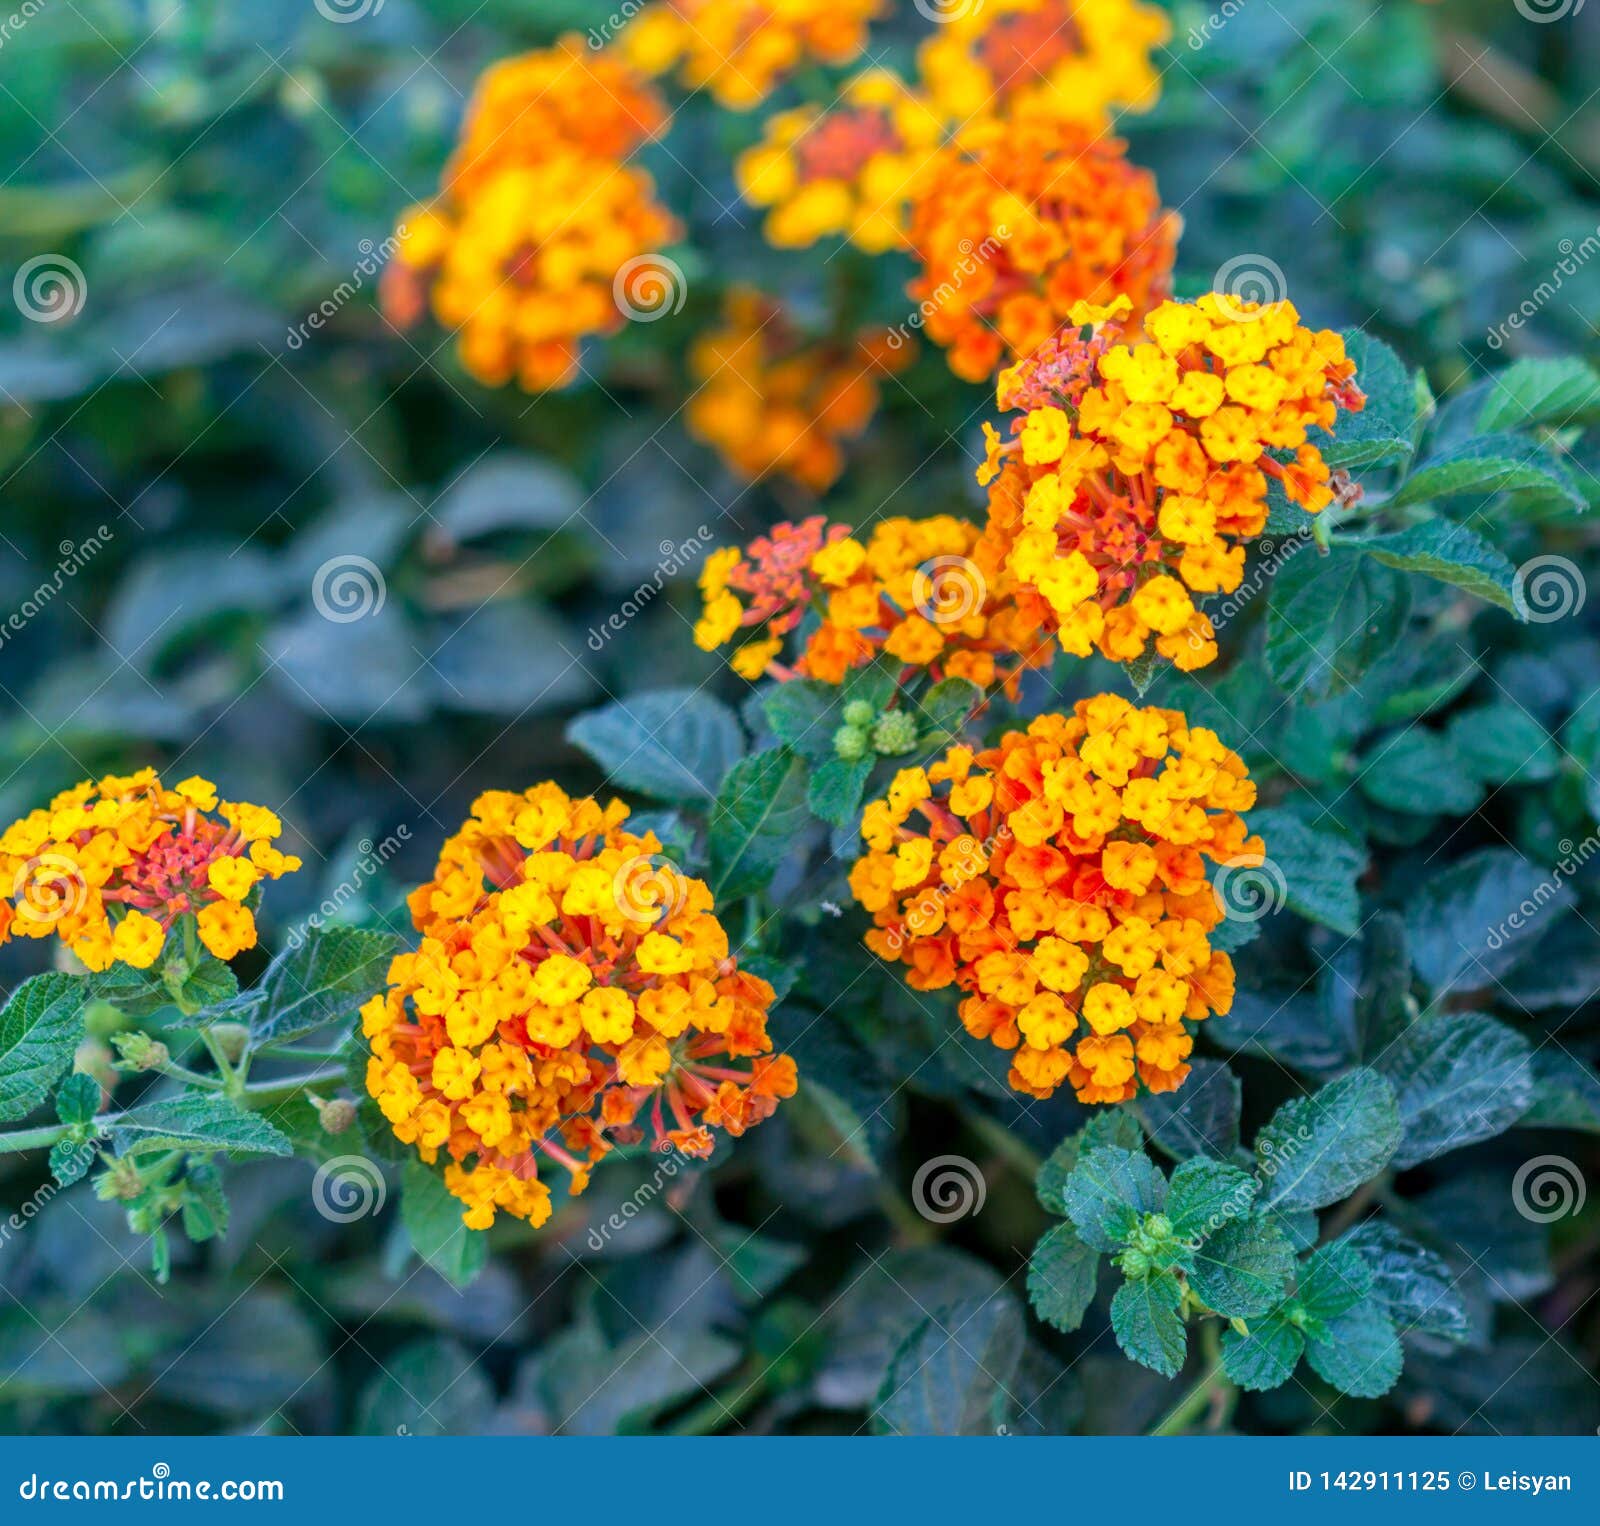 Lantana camara flowers stock image. Image of season - 142911125